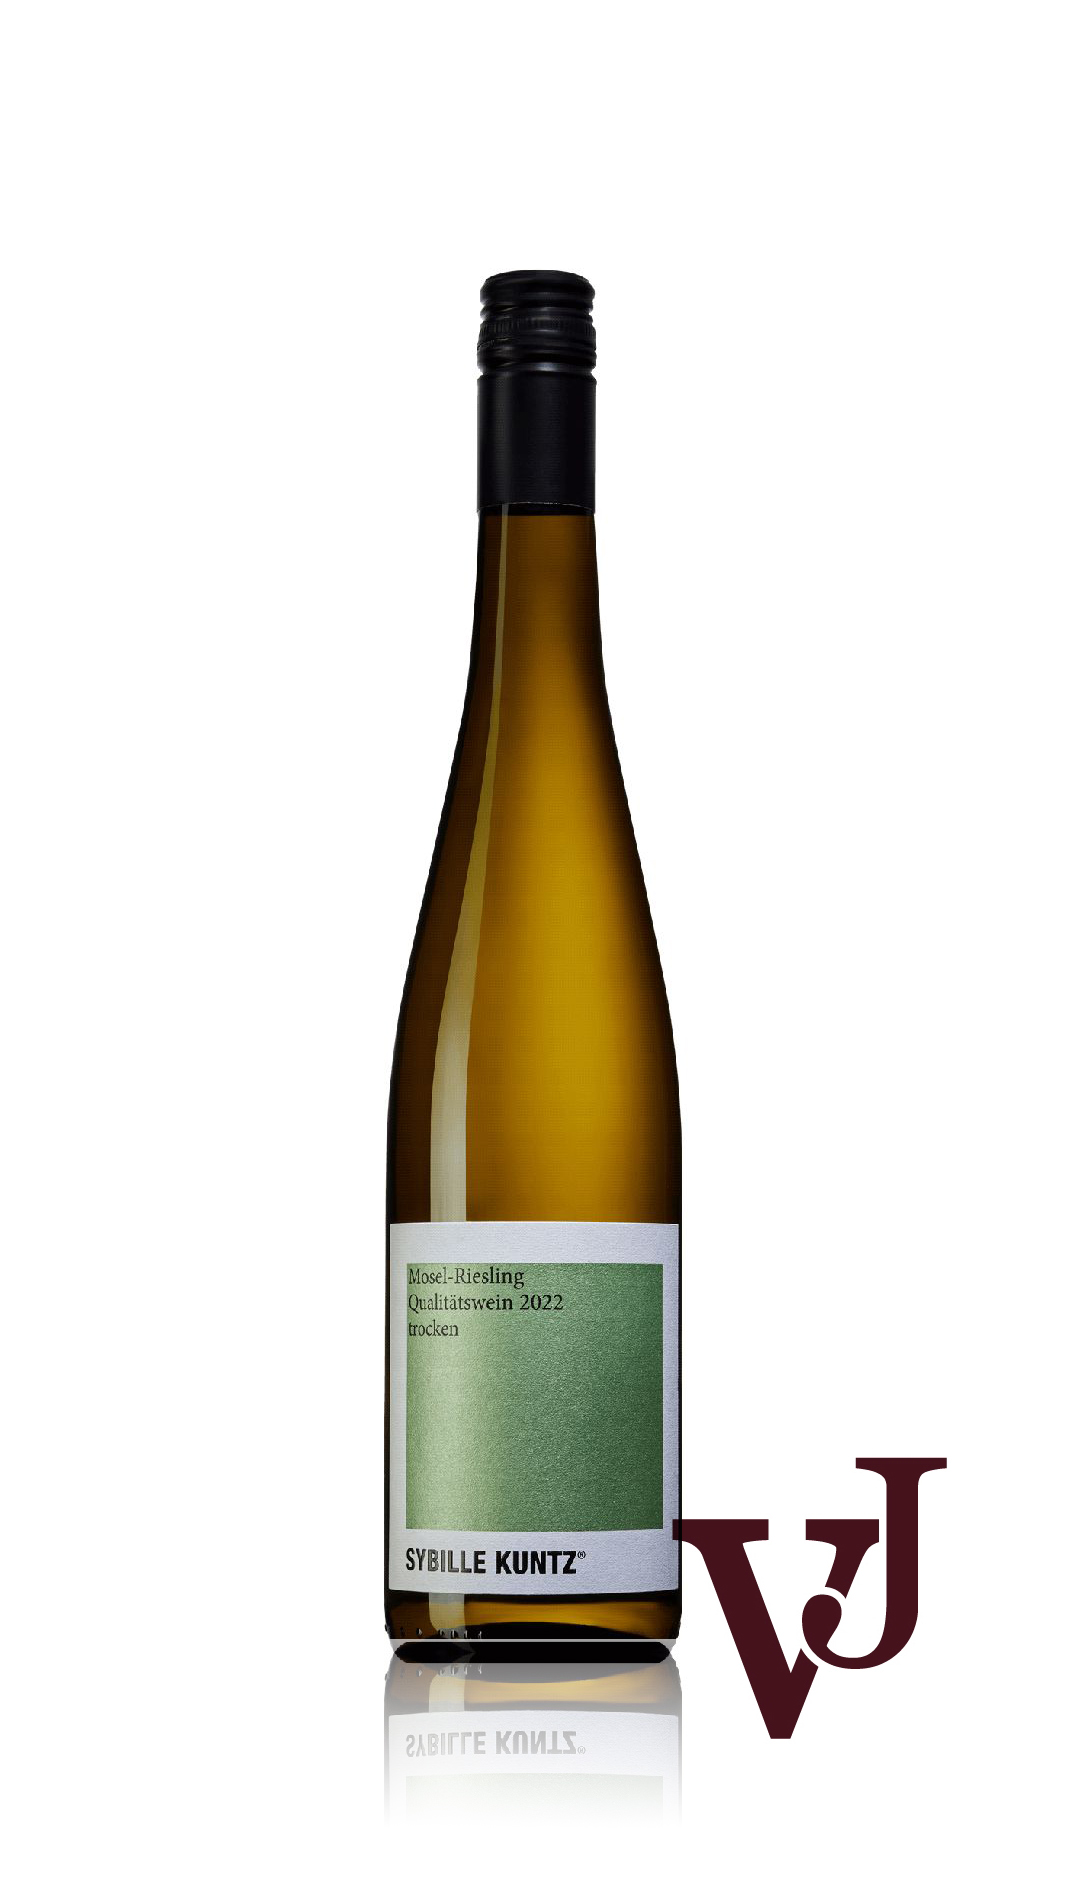 Vitt Vin - Sybille Kuntz Riesling Qualitätswein trocken 2022 artikel nummer 9502501 från producenten Weingut Sybille Kuntz från området Tyskland